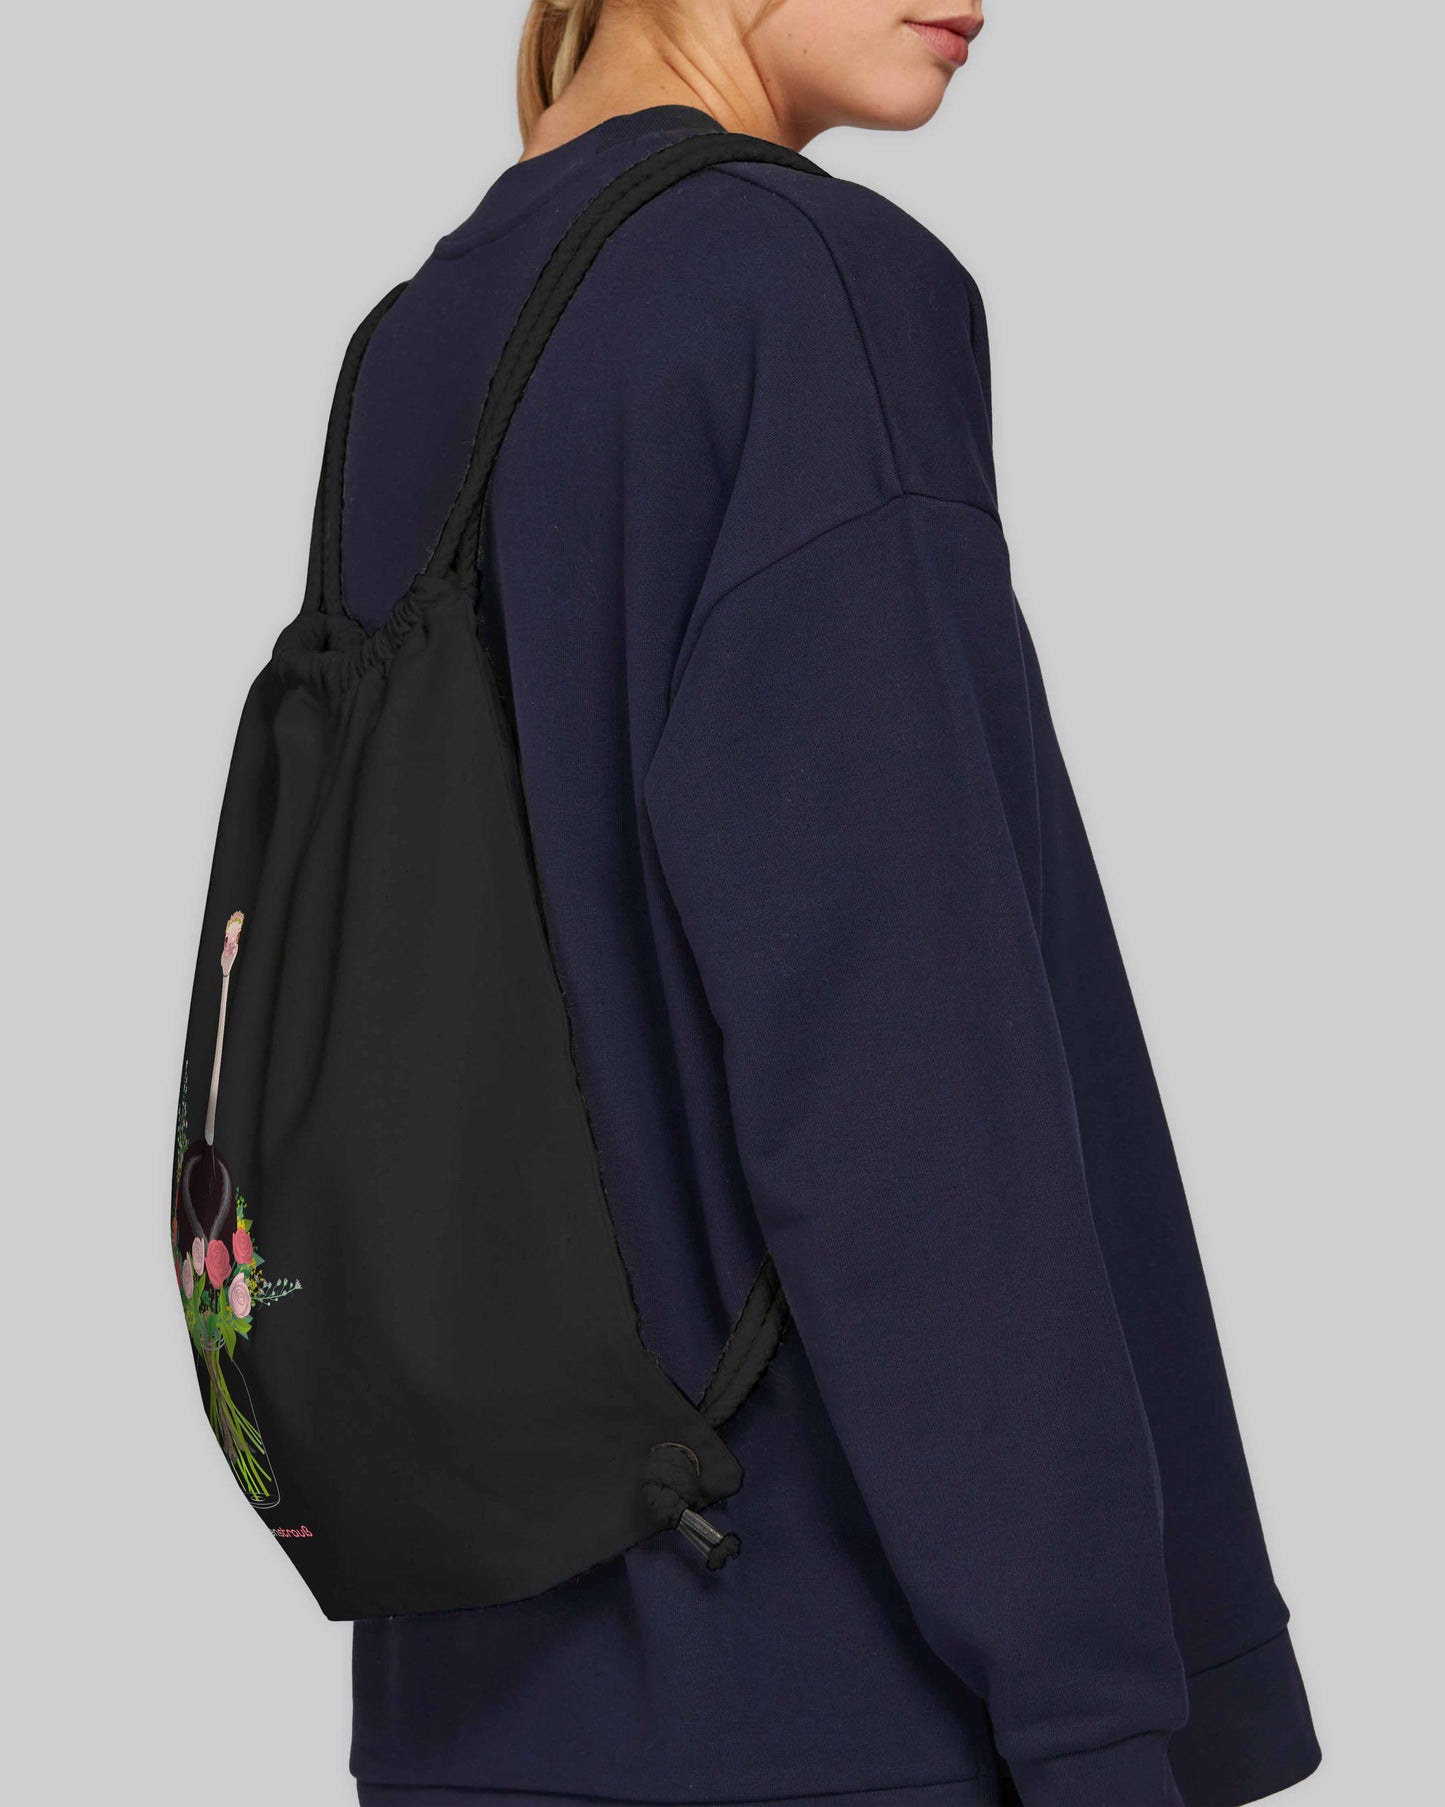 EINHORST® Sportbeutel in Schwarz mit dem Motiv "Blumenstrauß", Bild von weiblicher Person mit Sportbeutel